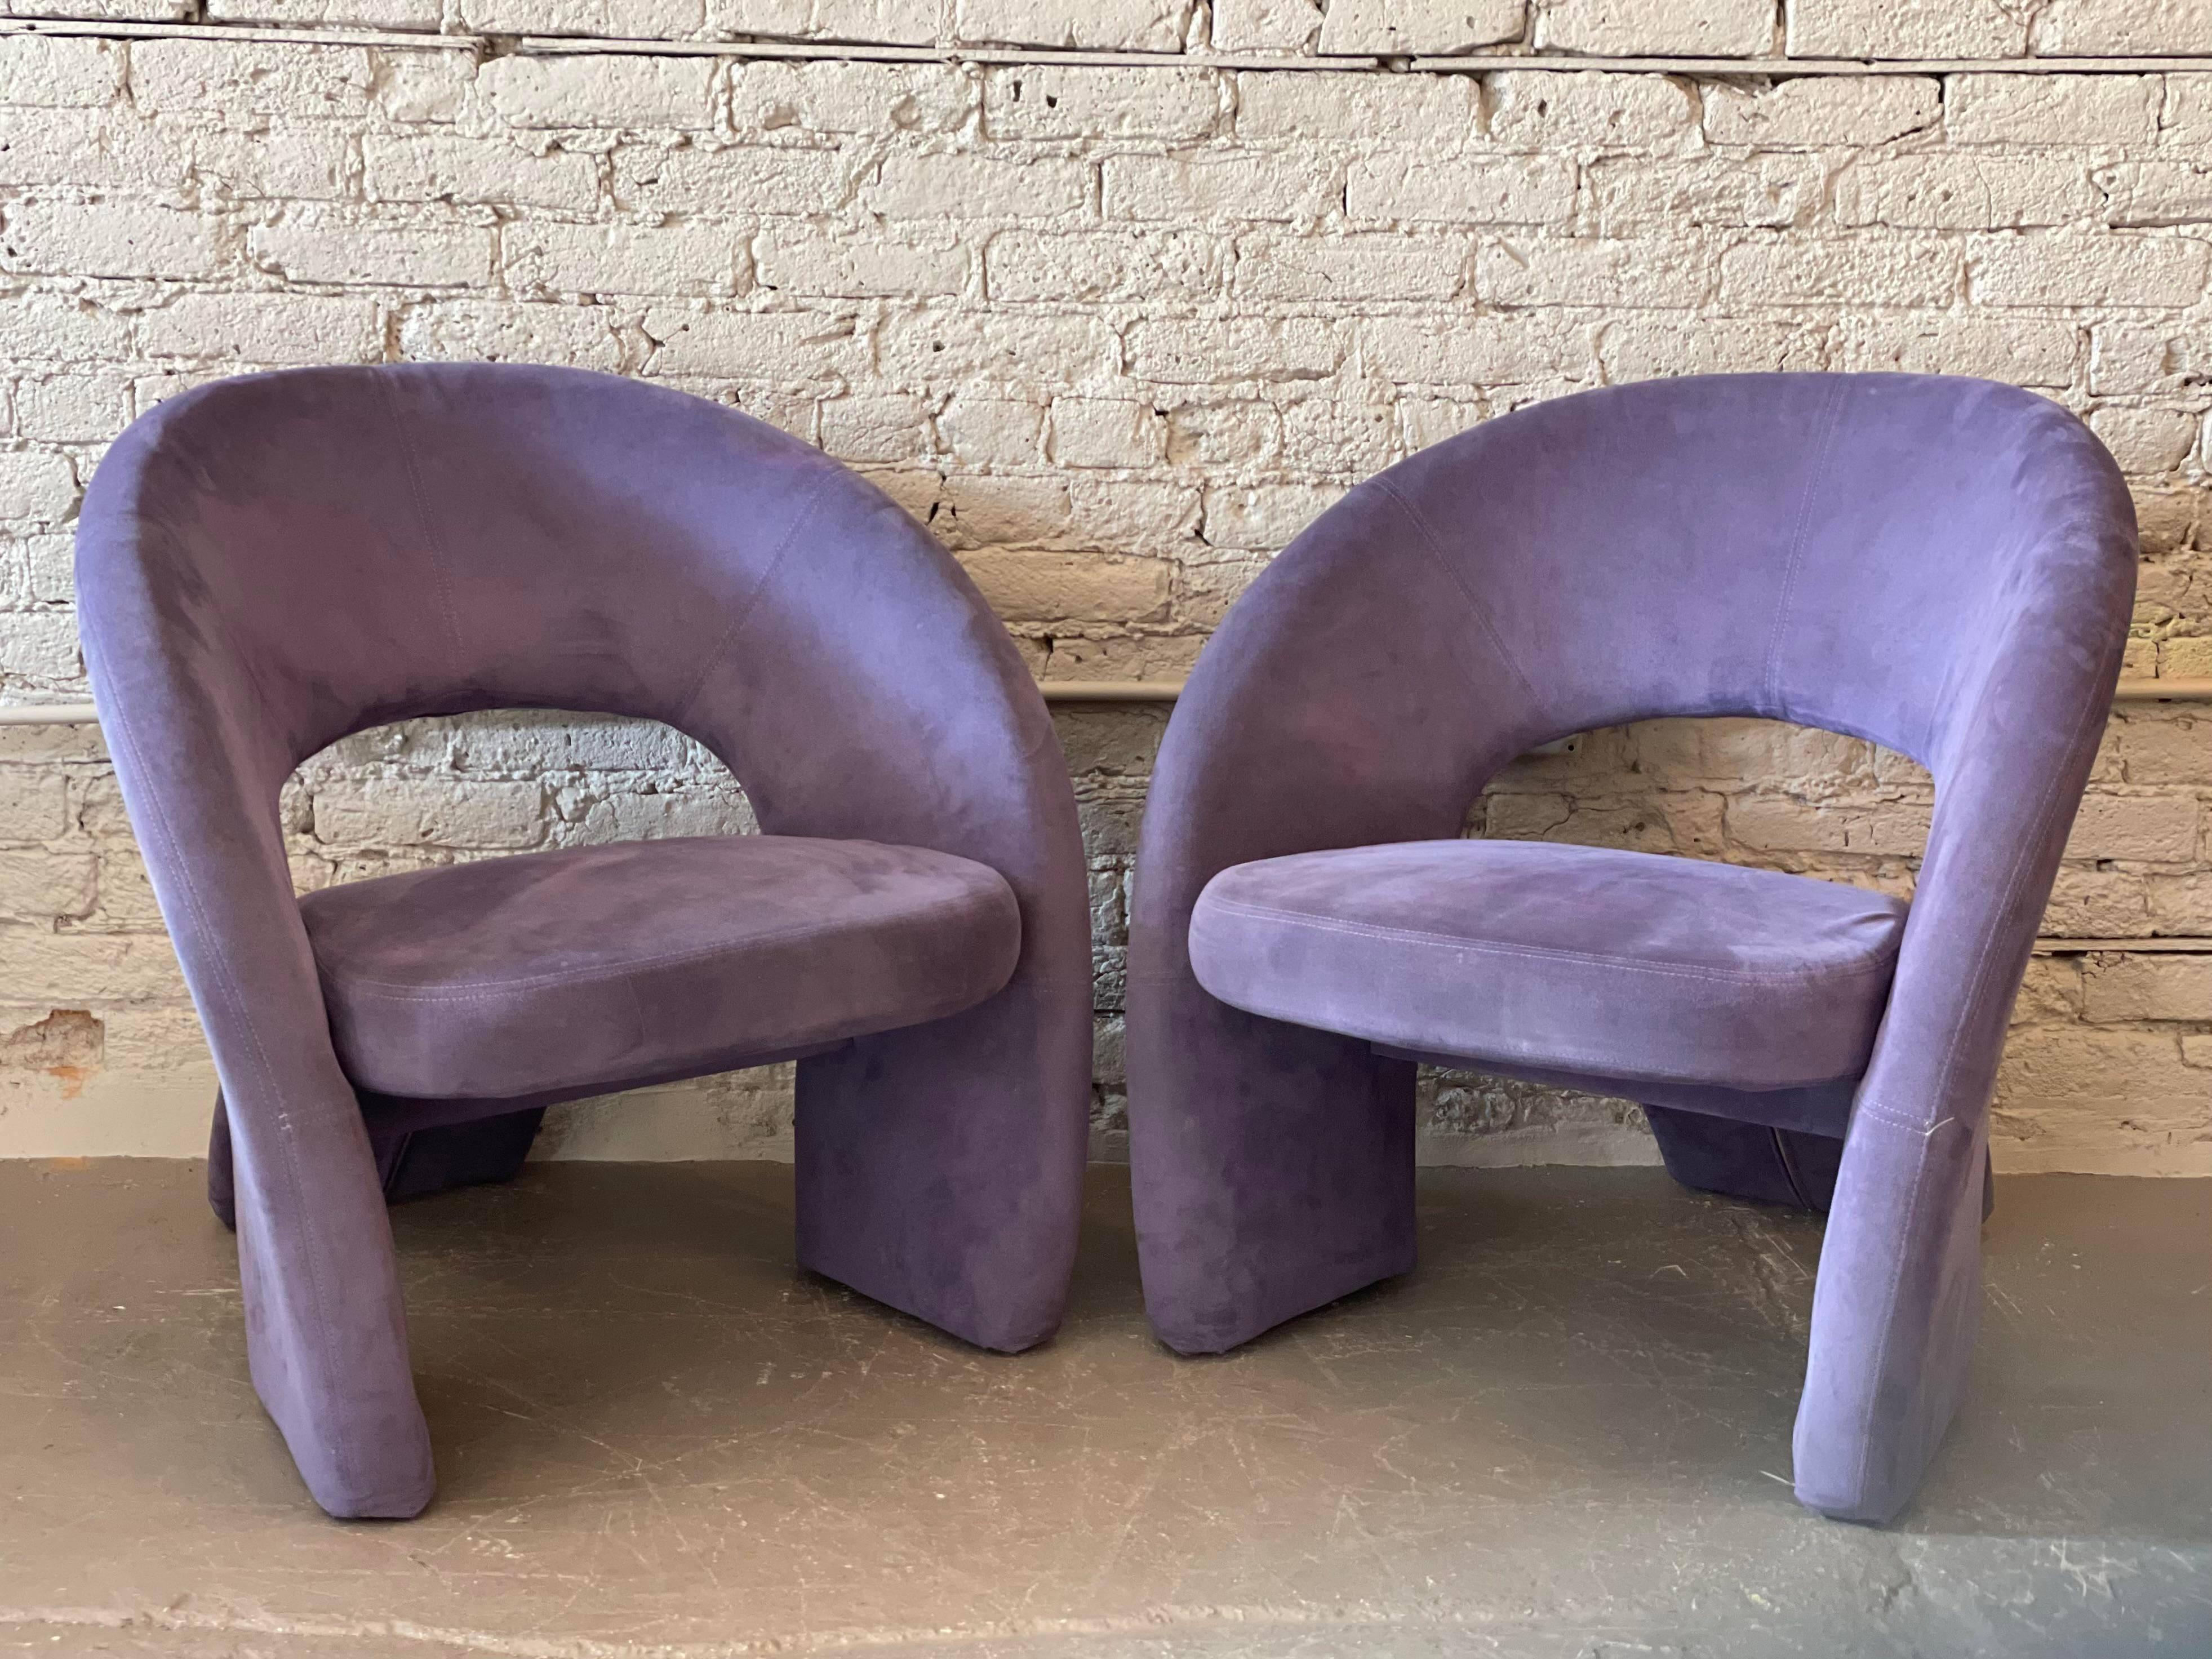 Des chaises postmodernes super cool et confortables. Superbes angles, ils sont beaux de toutes les directions. Le daim ultra original est en excellent état et peut être utilisé tel quel. J'ai également deux autres chaises identiques (une turquoise,